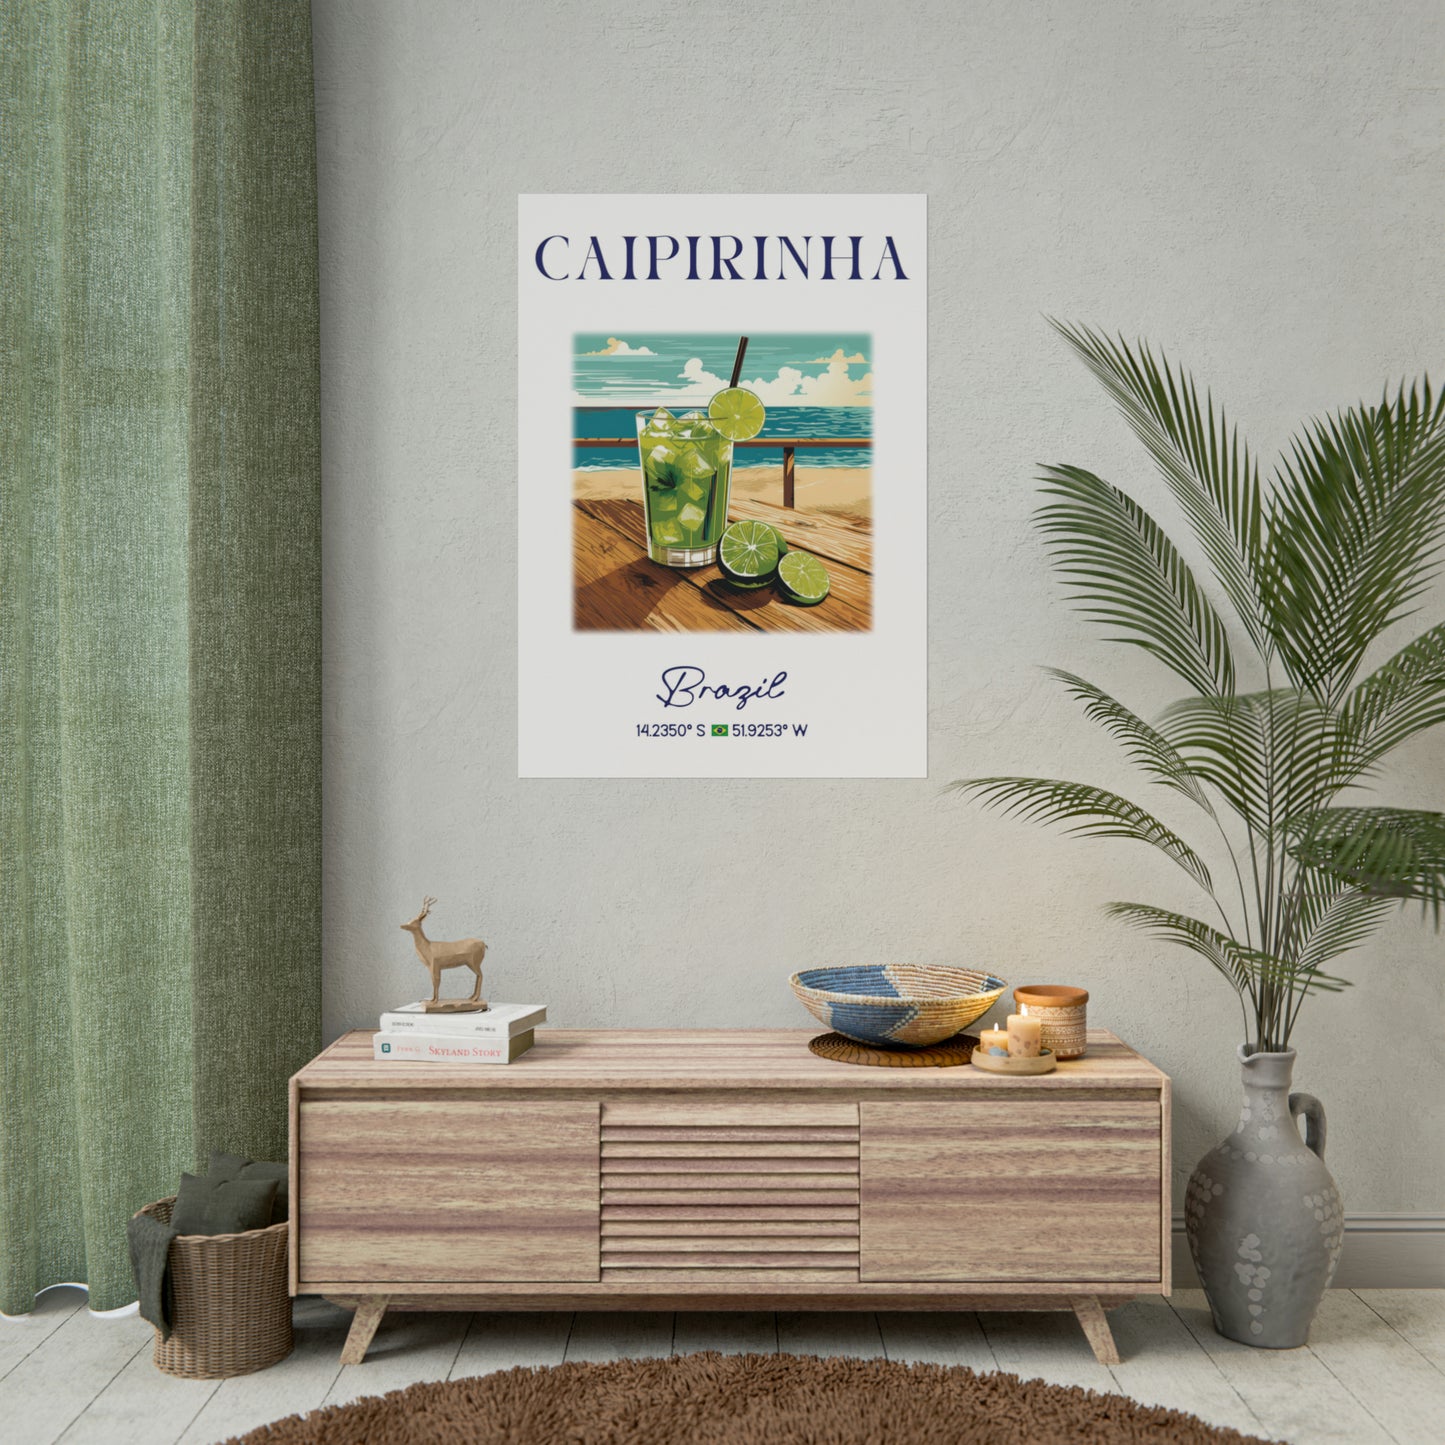 CAIPIRINHA Poster